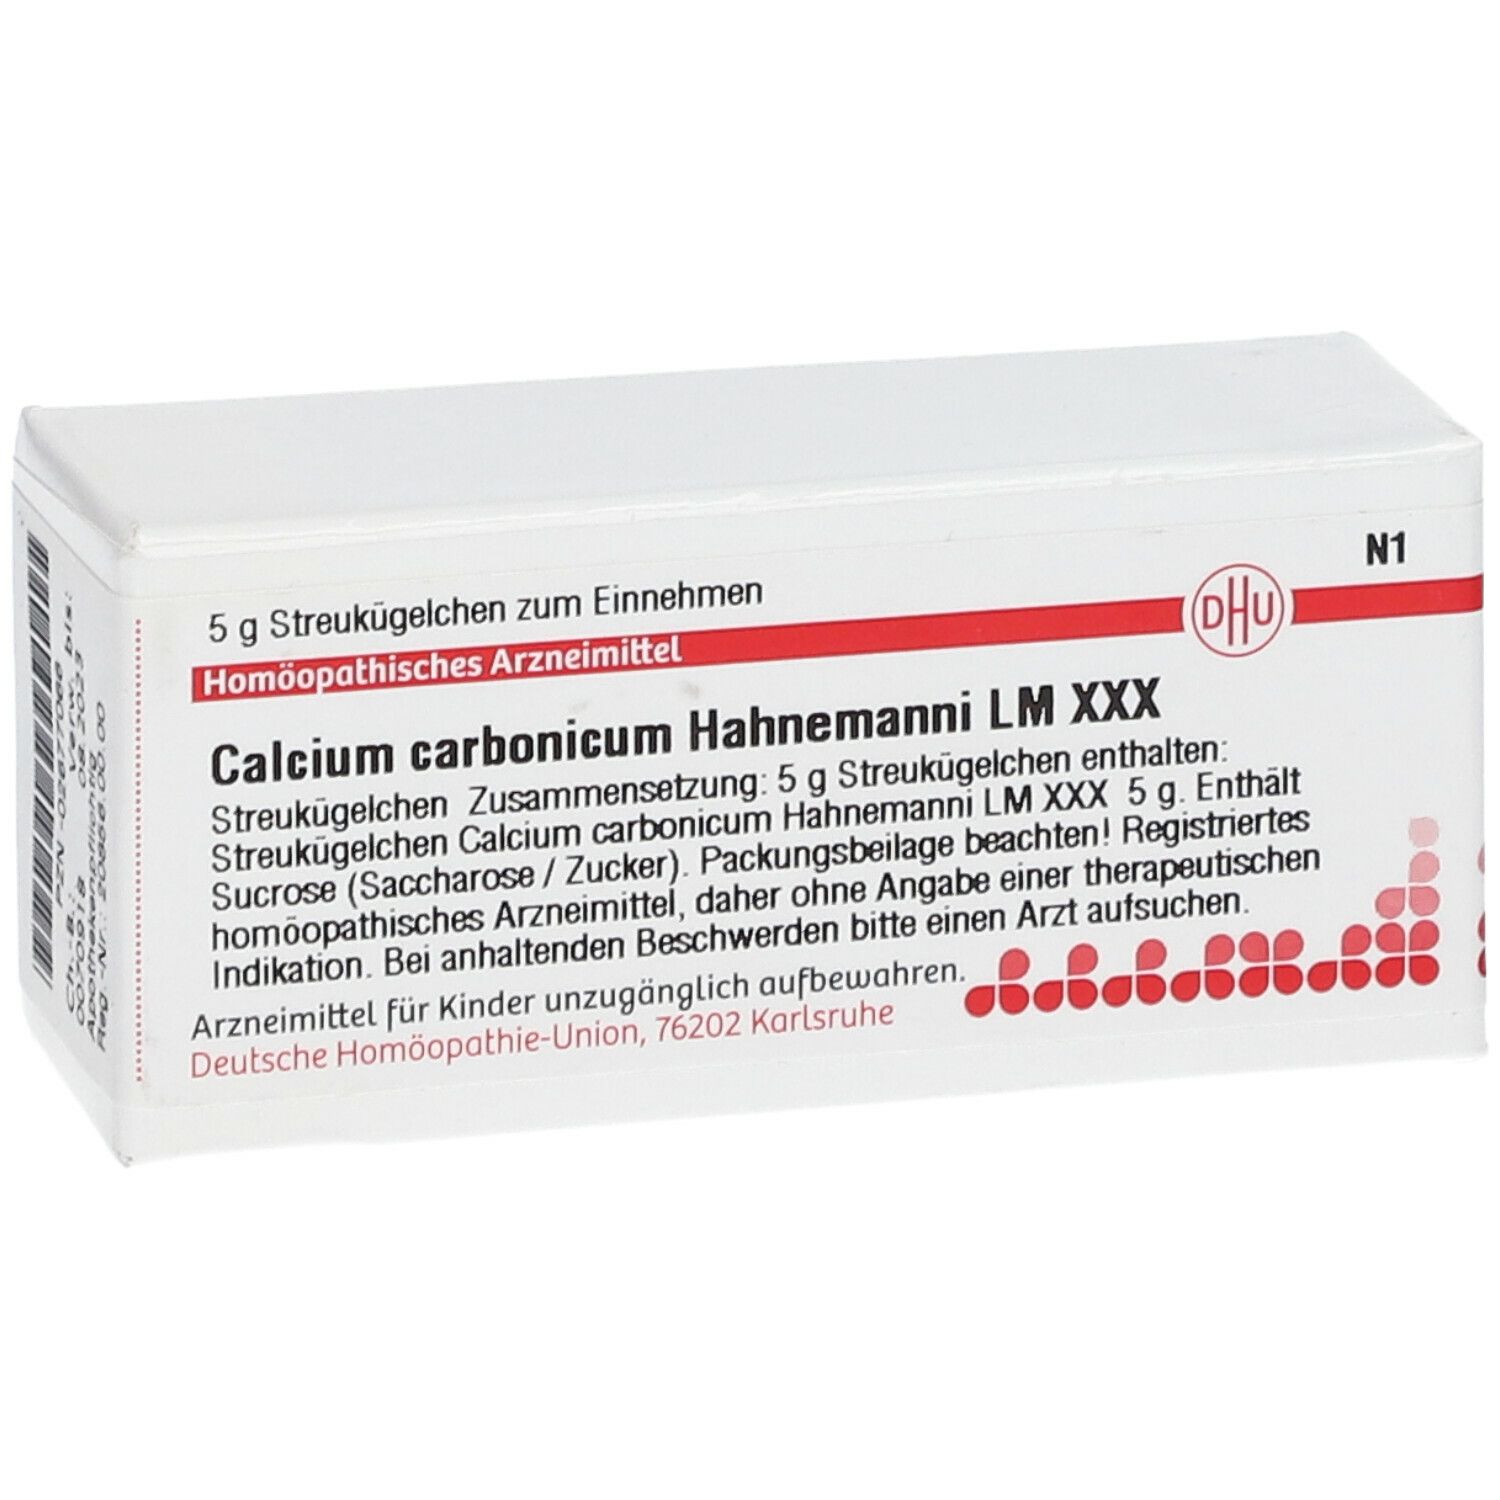 DHU Calcium Carbonicum Hahnemanni LM XXX